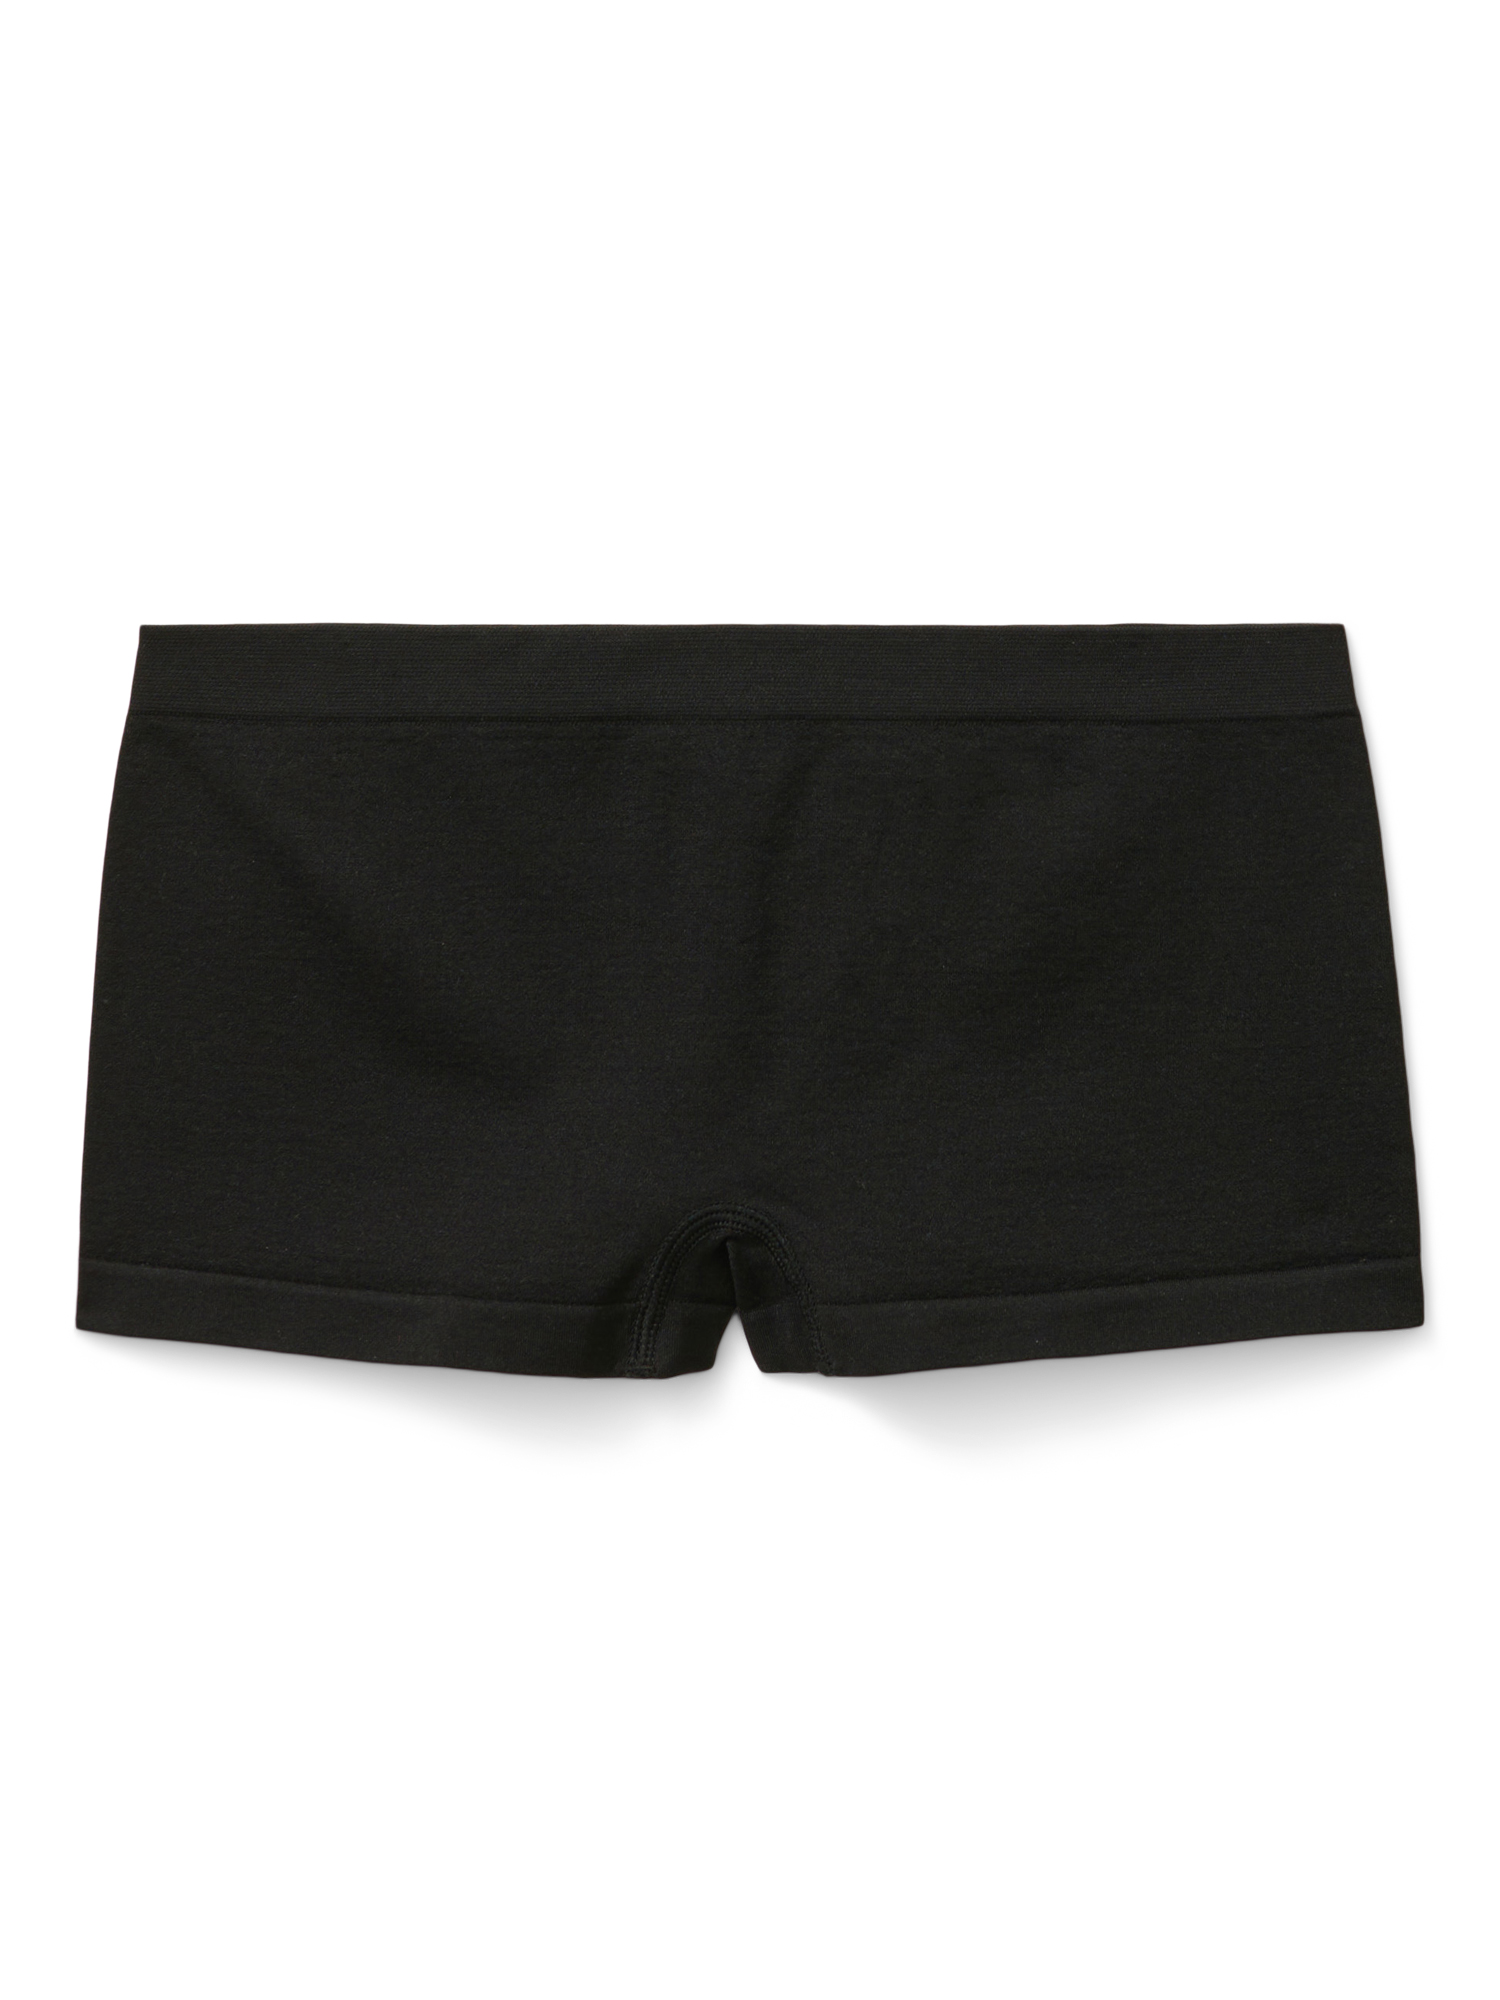 Justice Girls Boyshort Underwear, 5-Pack, Sizes 6-16 - Walmart.com